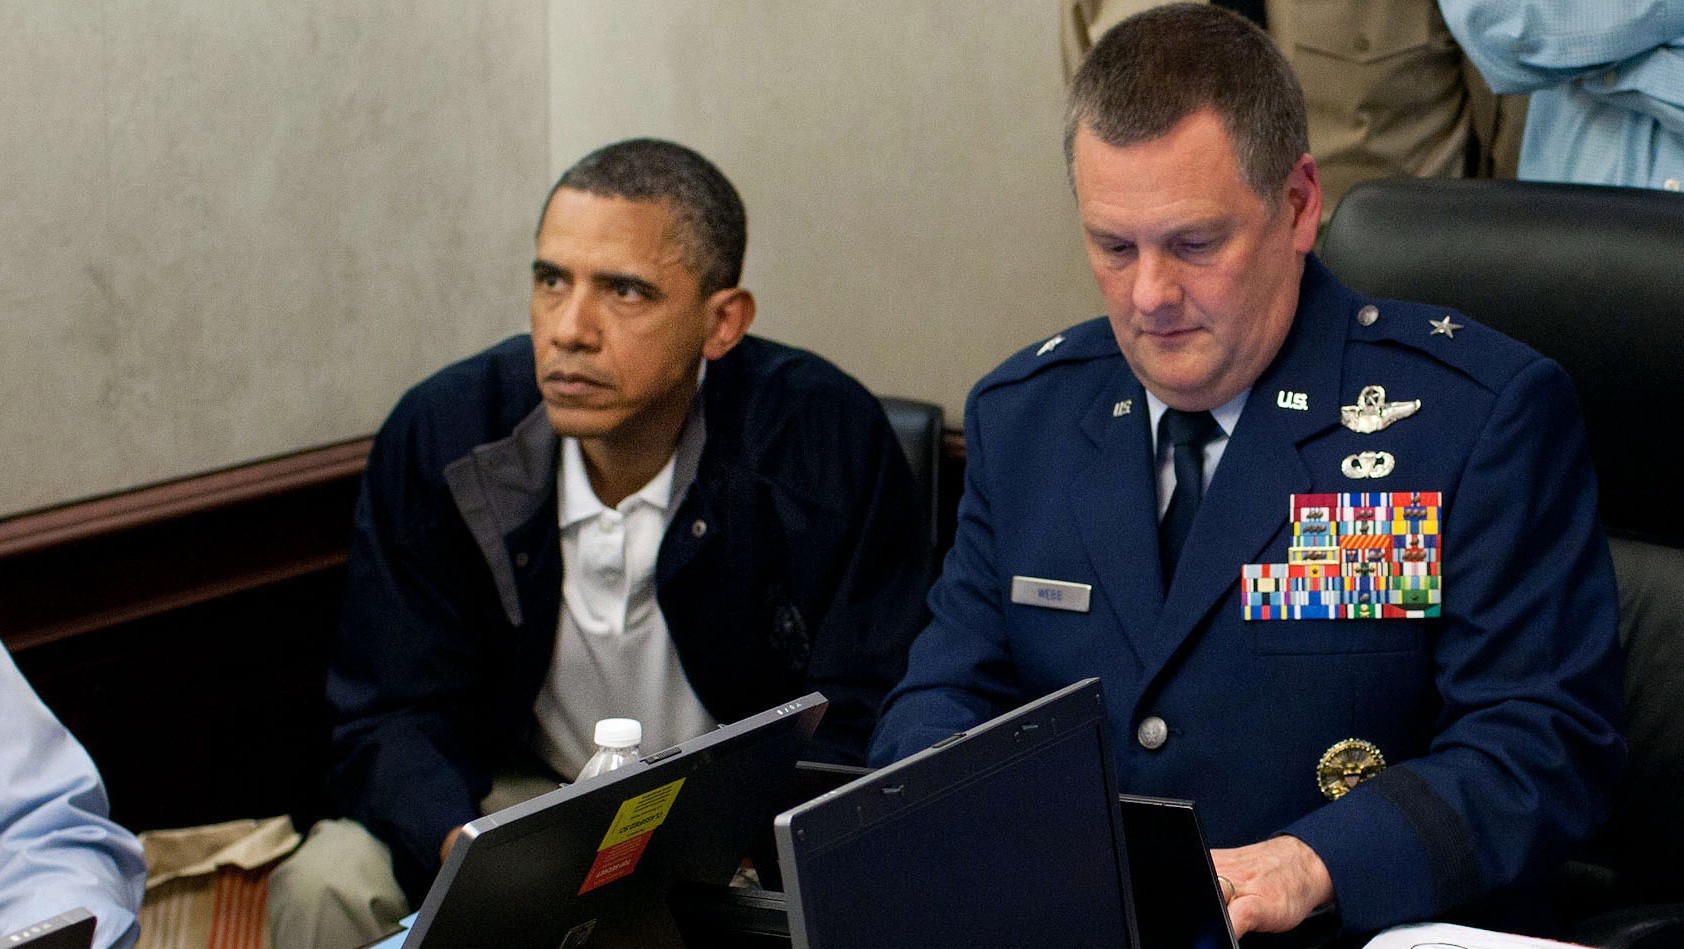 Obama sleduje naživo útok na bin Ládina